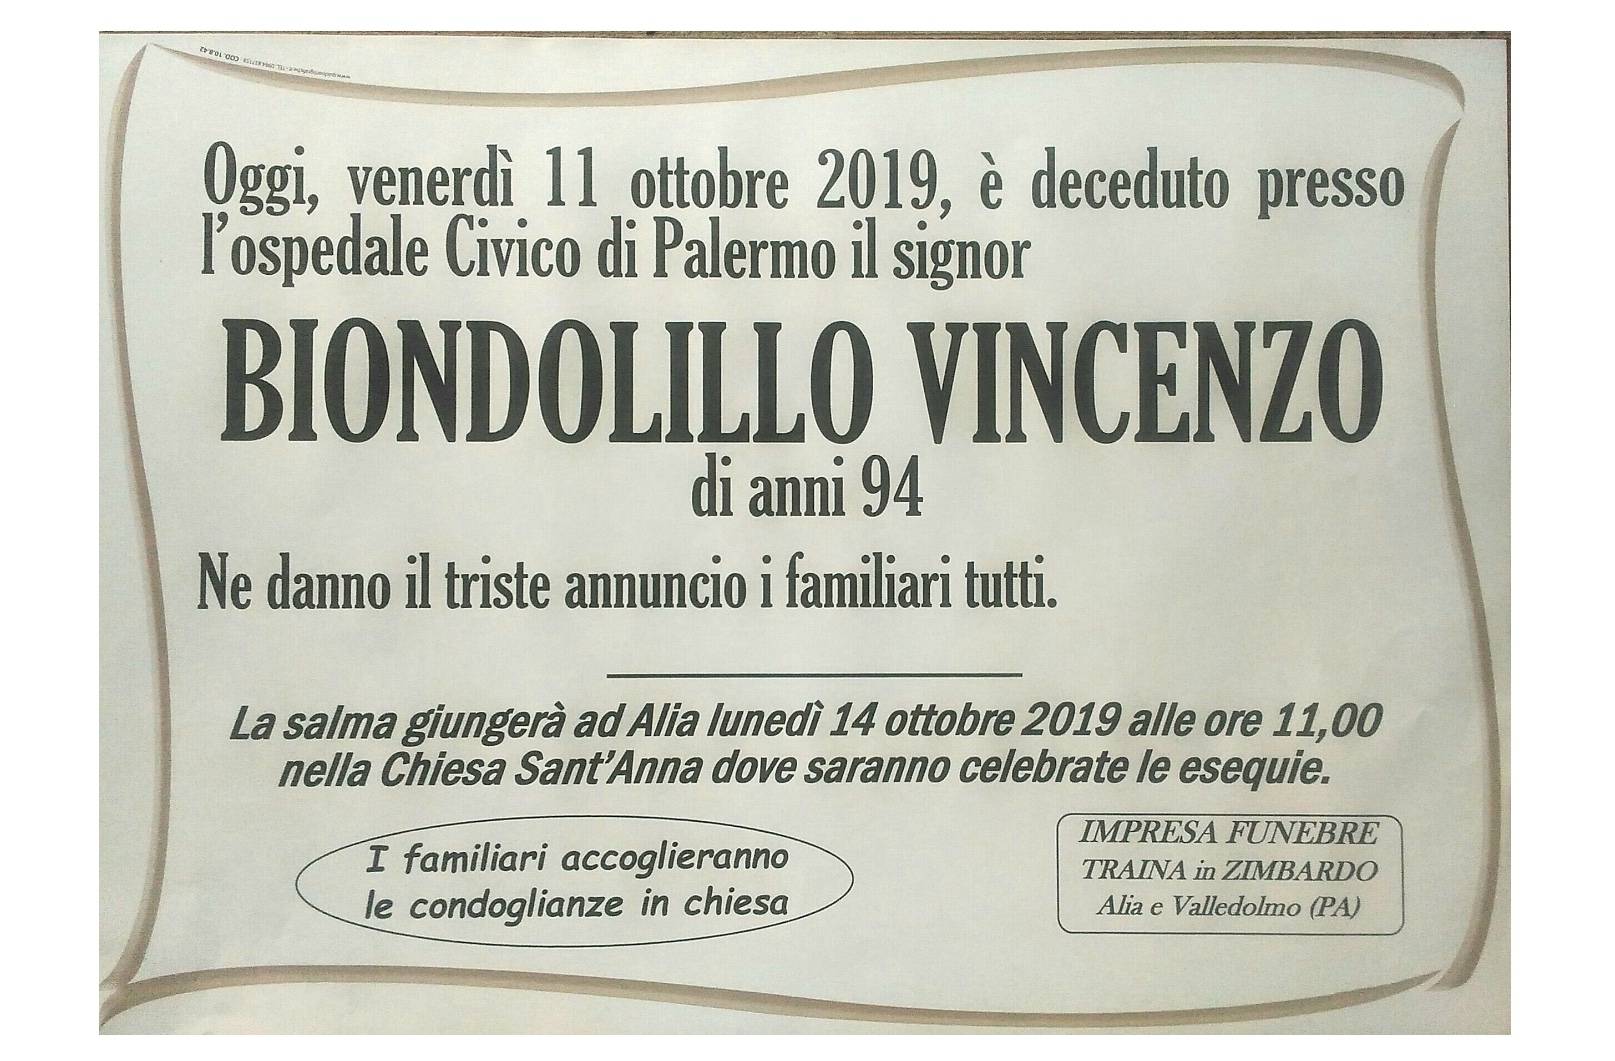 Vincenzo Biondolillo